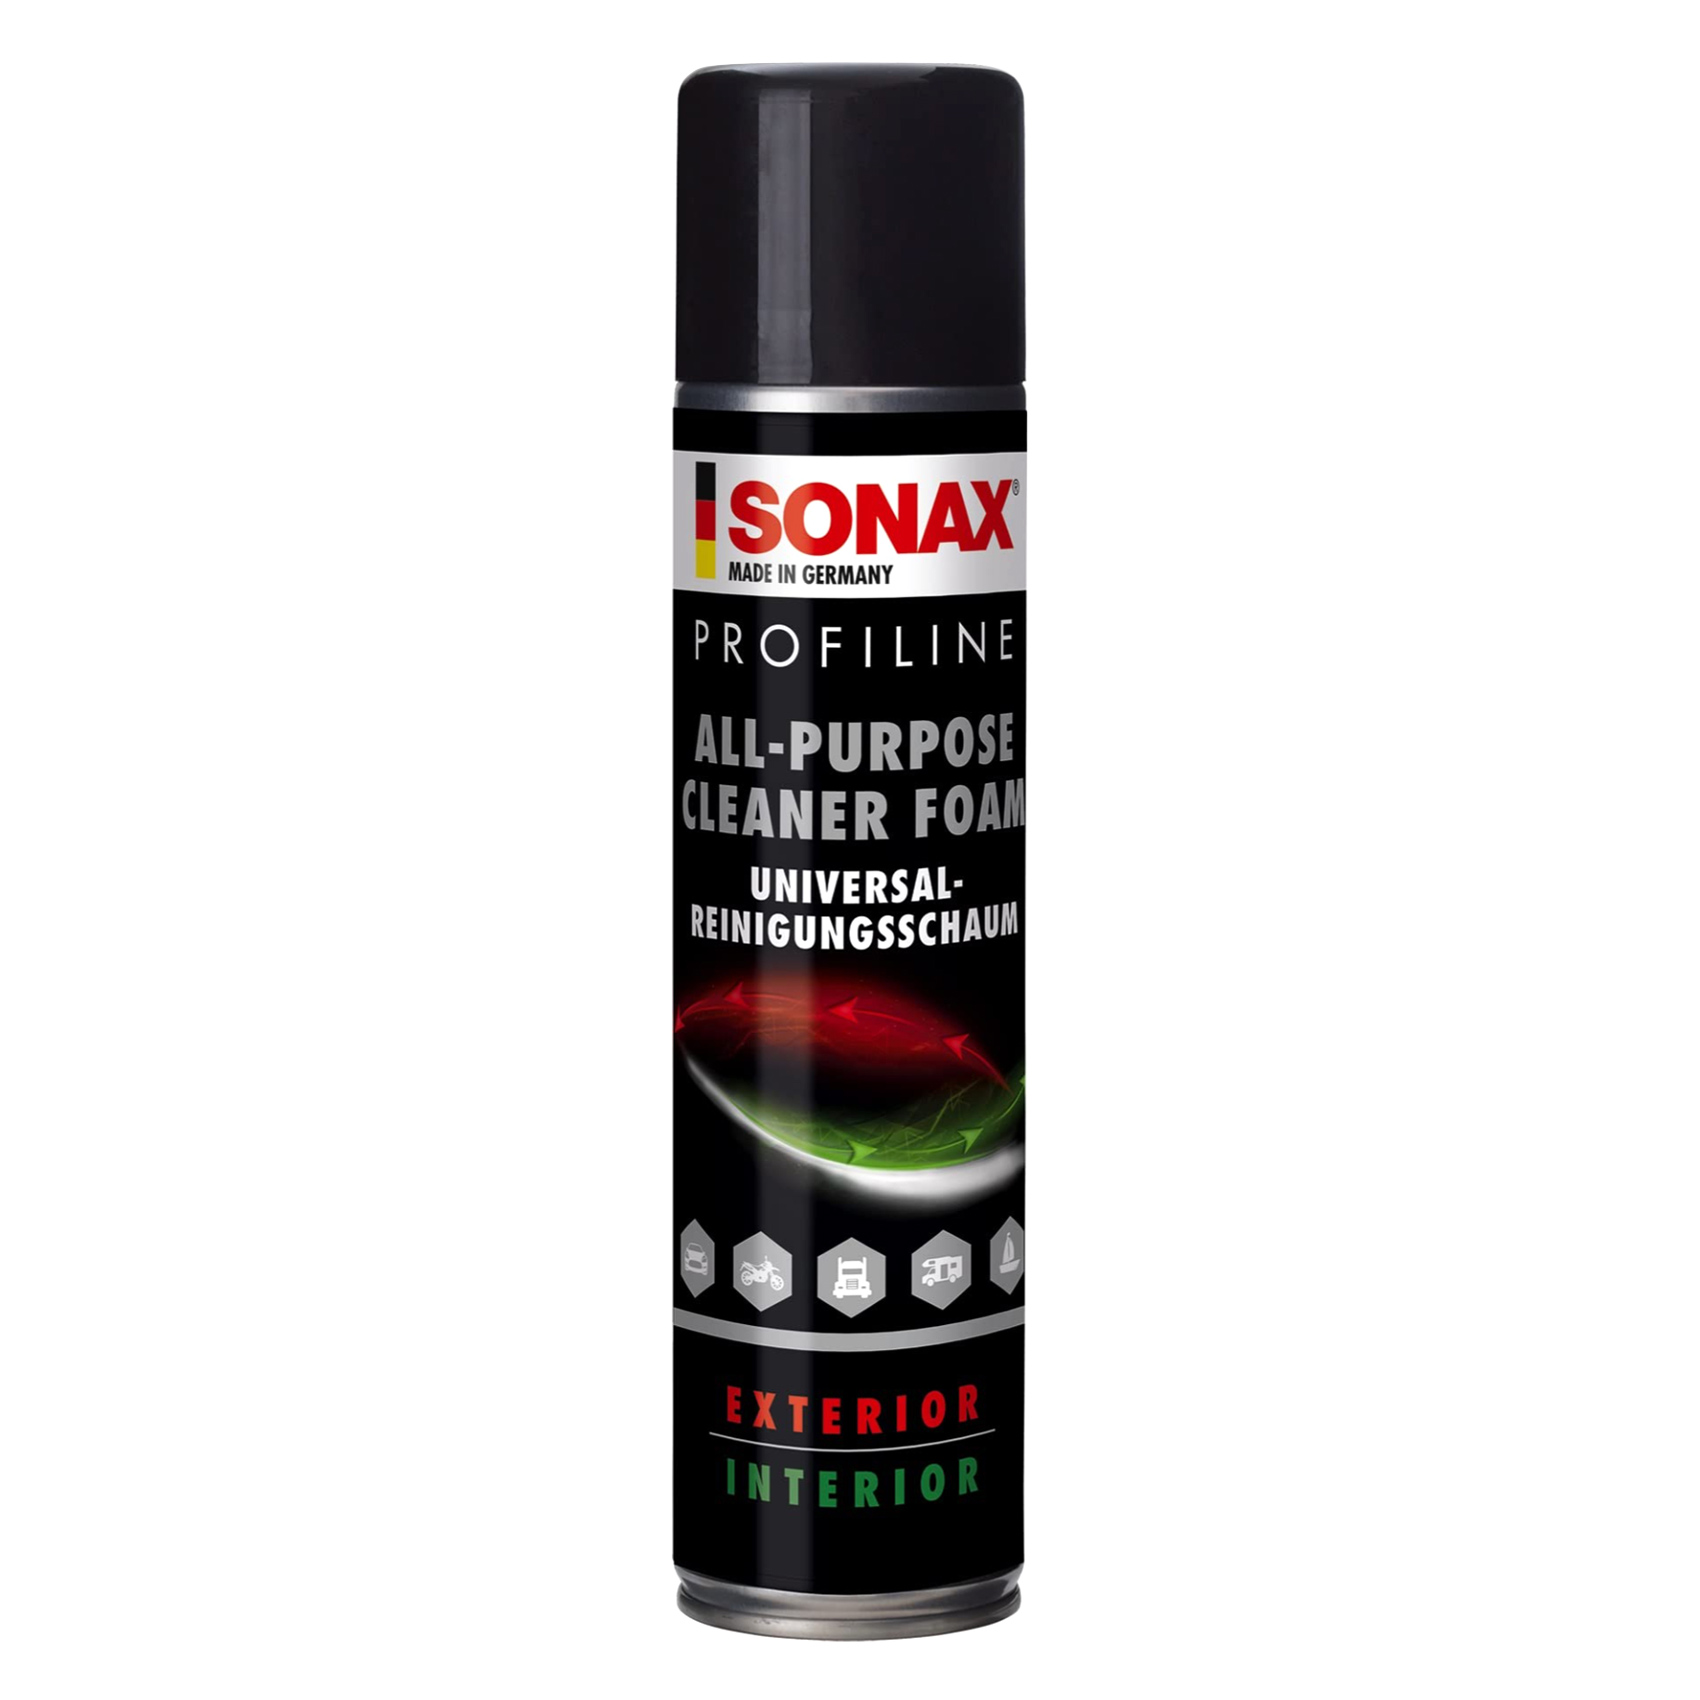 Sonax Profiline All Purpose Cleaner Foam 400 Ml